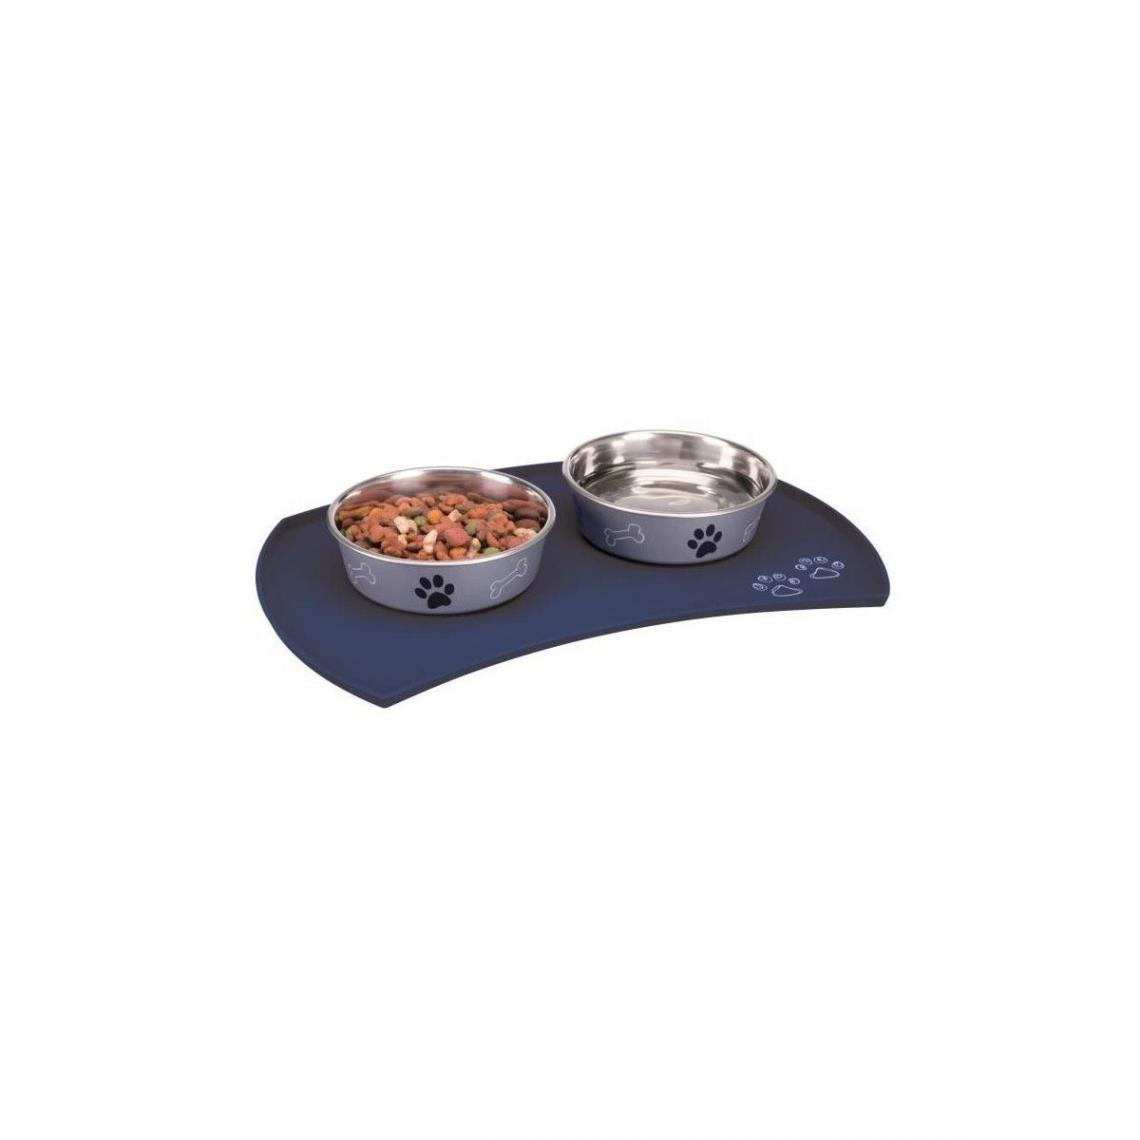 Trixie - TRIXIE Set de table en silicone - 48 × 27 cm - Bleu - Pour chien - Gamelle pour chien